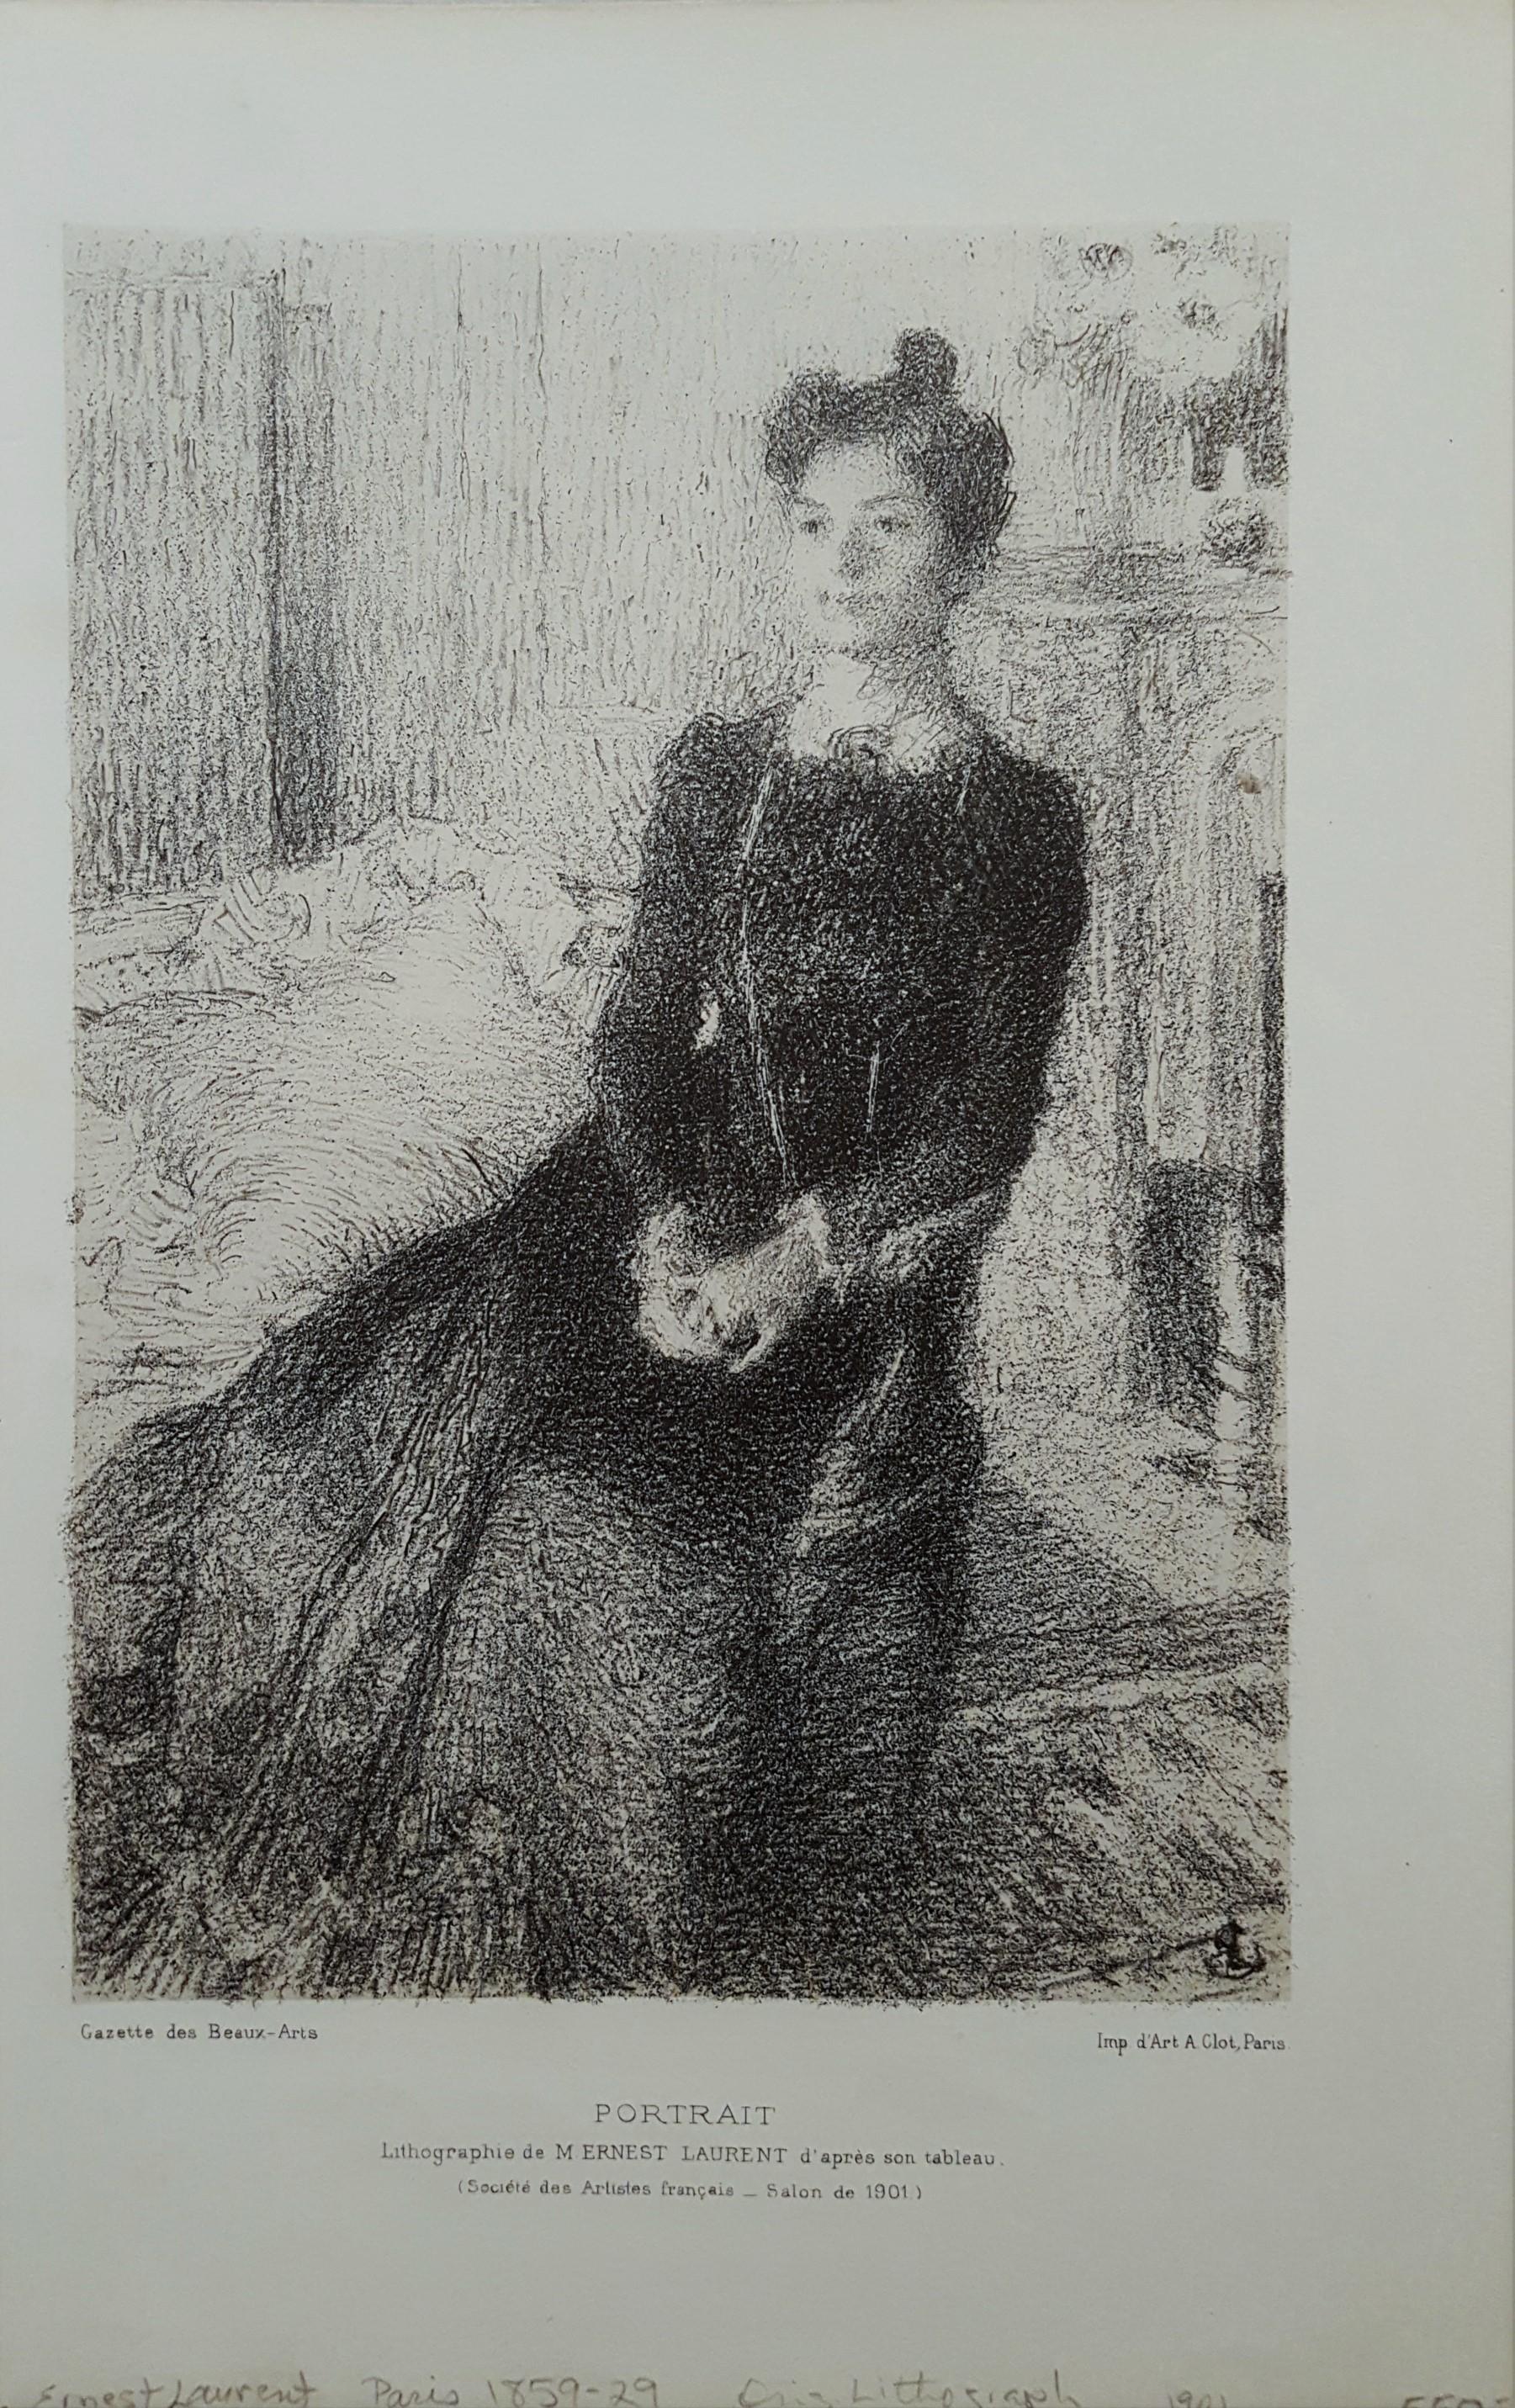 Portrait - Print by Ernest Joseph Laurent